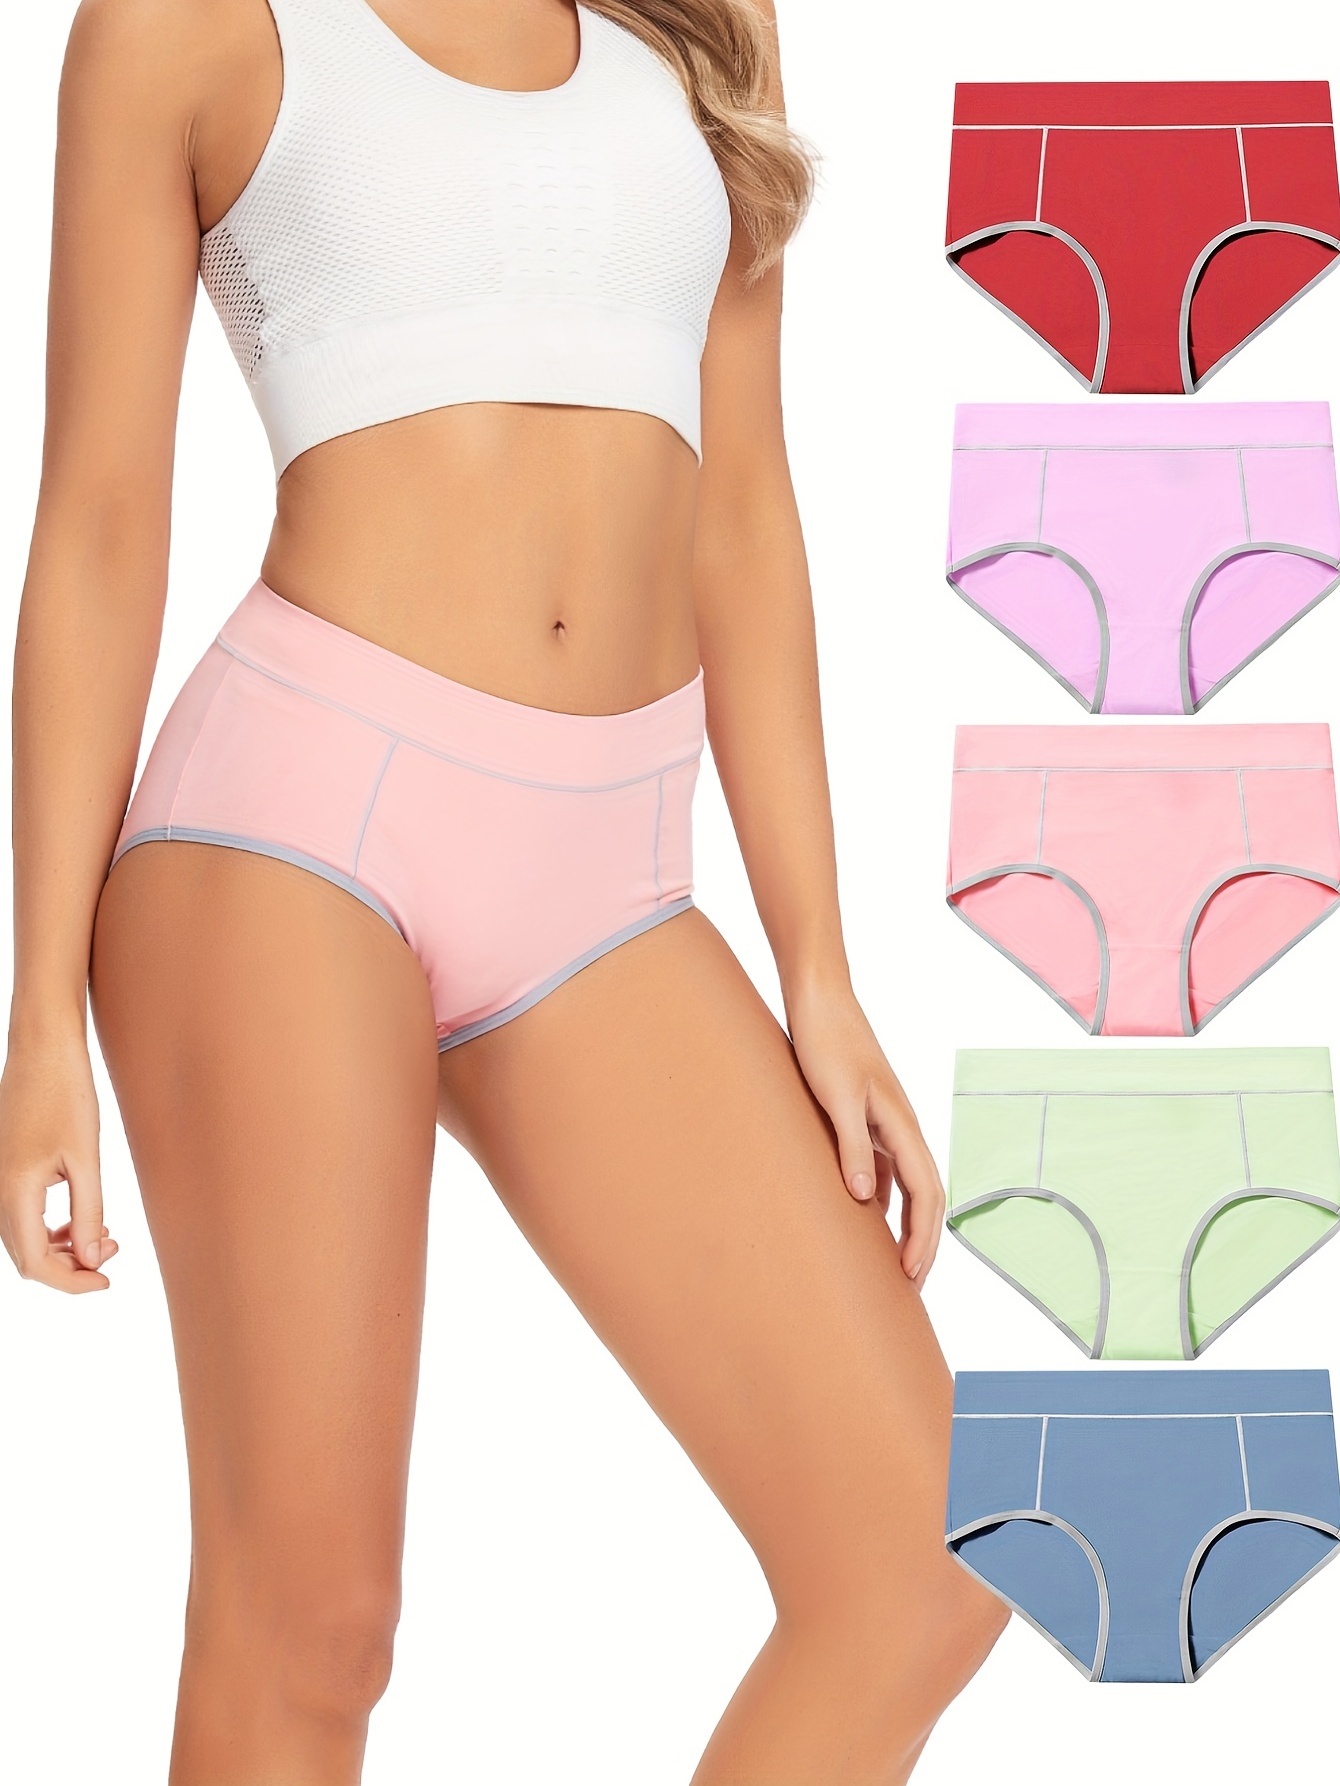 5pcs one pack Women's High Waist Cotton Panties Briefs Soft Breathable  Comfy Underwear Plus Size M-XL